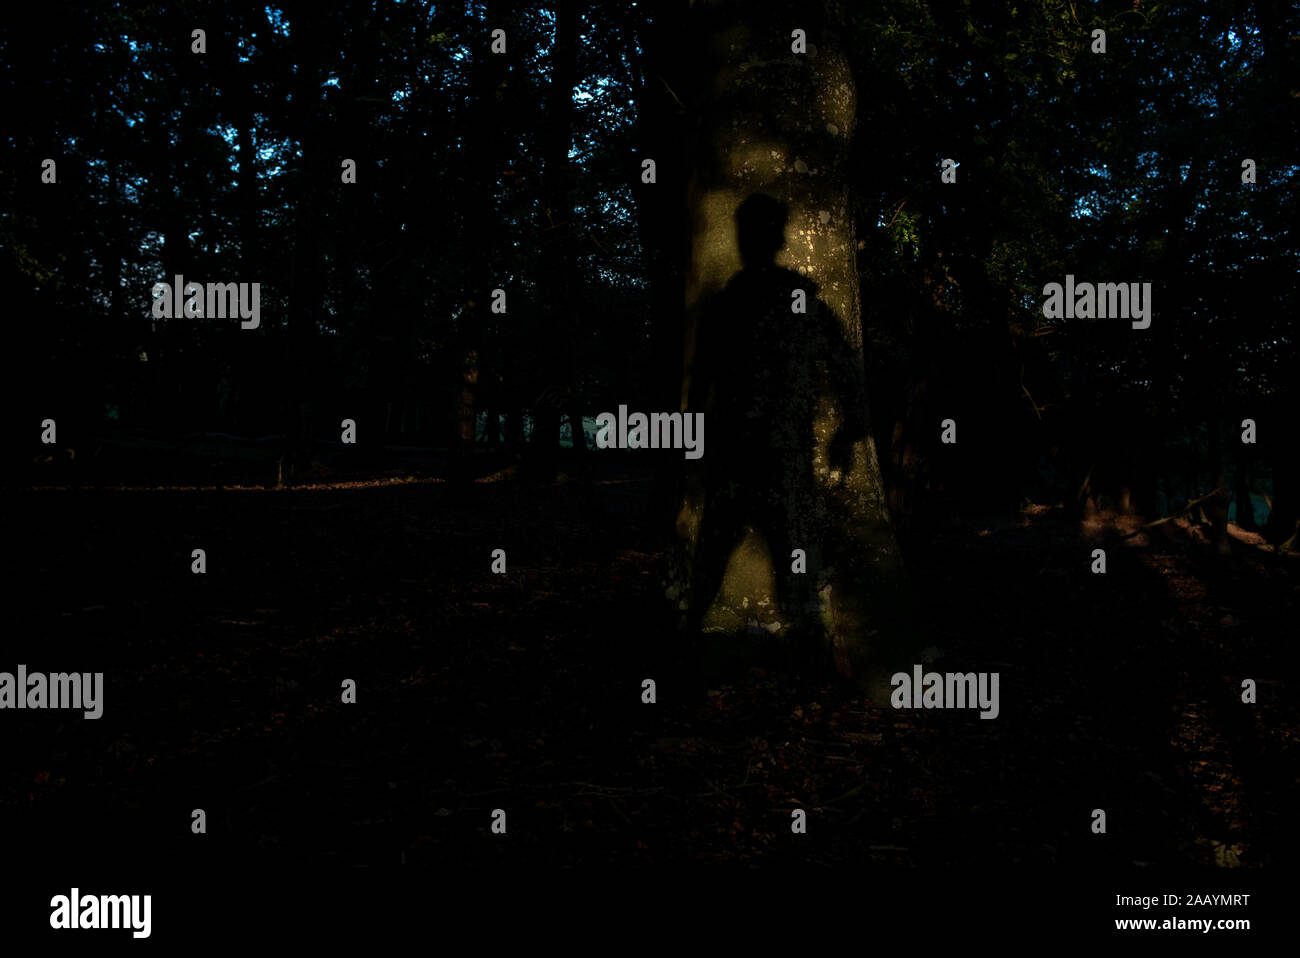 Un concept de droit aux utilisations multiples d'un homme pleine longueur ombre sur l'arbre de chêne provoquant la peur ou mystère dans une forêt. Banque D'Images